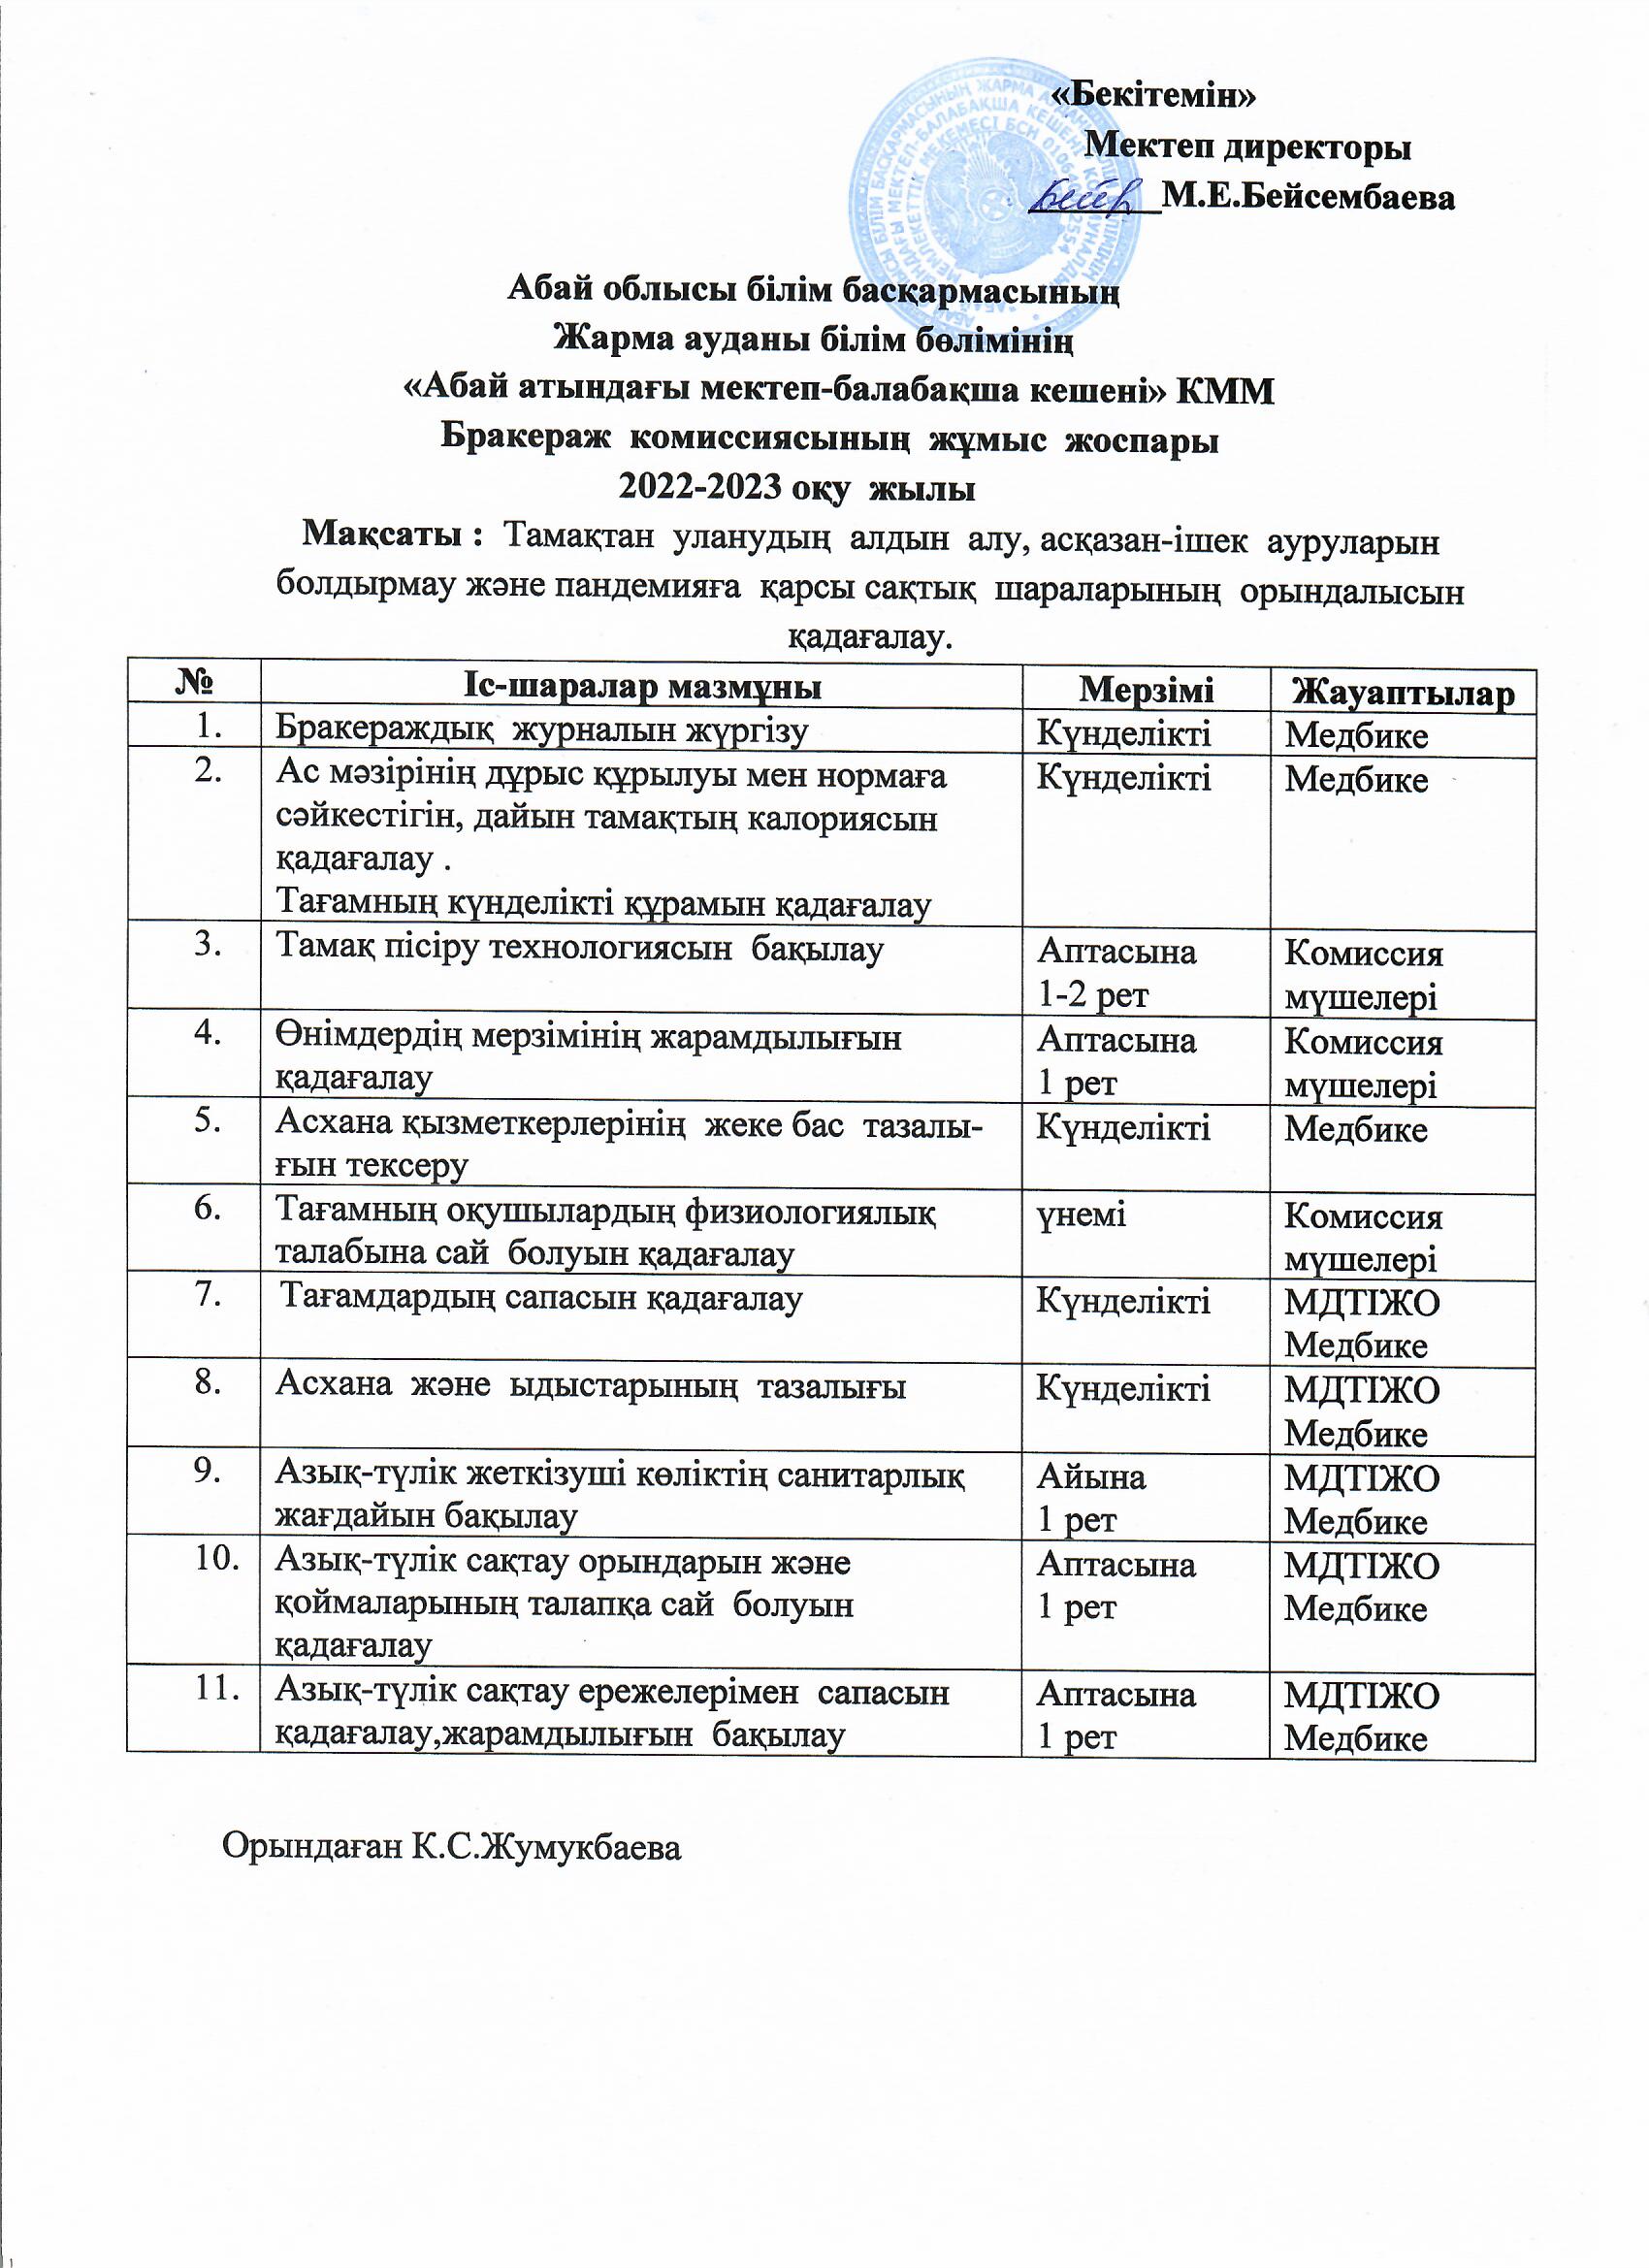 Бракераж  комиссиясының  жұмыс  жоспары  2022-2023 оқу  жылы Қазан